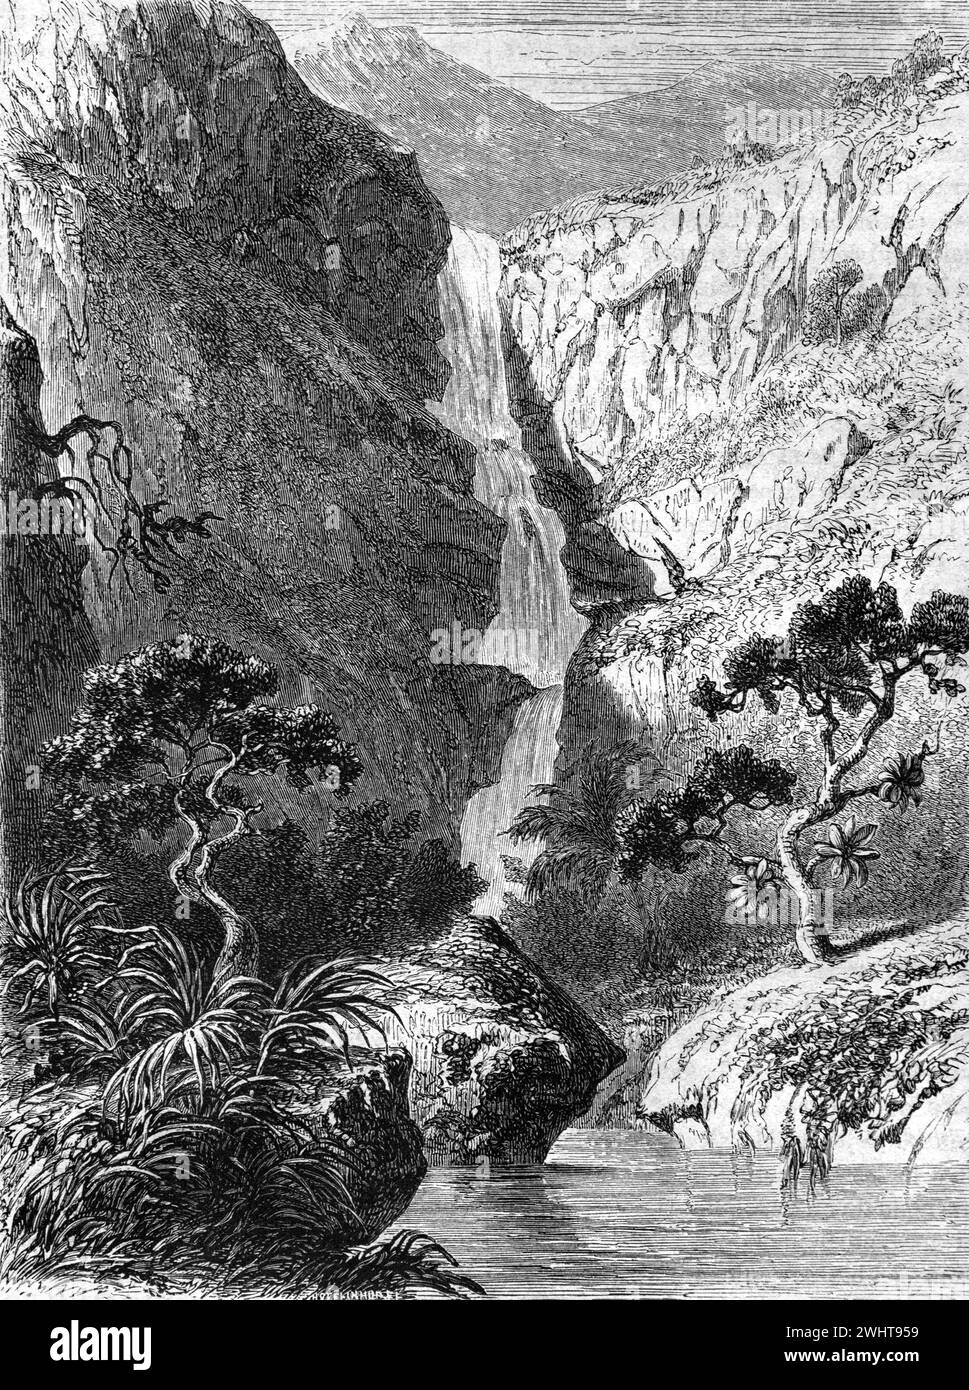 Wasserfall oder Kaskade am Fluss oder Rivière des Galets Mauritius. Vintage oder historische Gravur oder Illustration 1863 Stockfoto